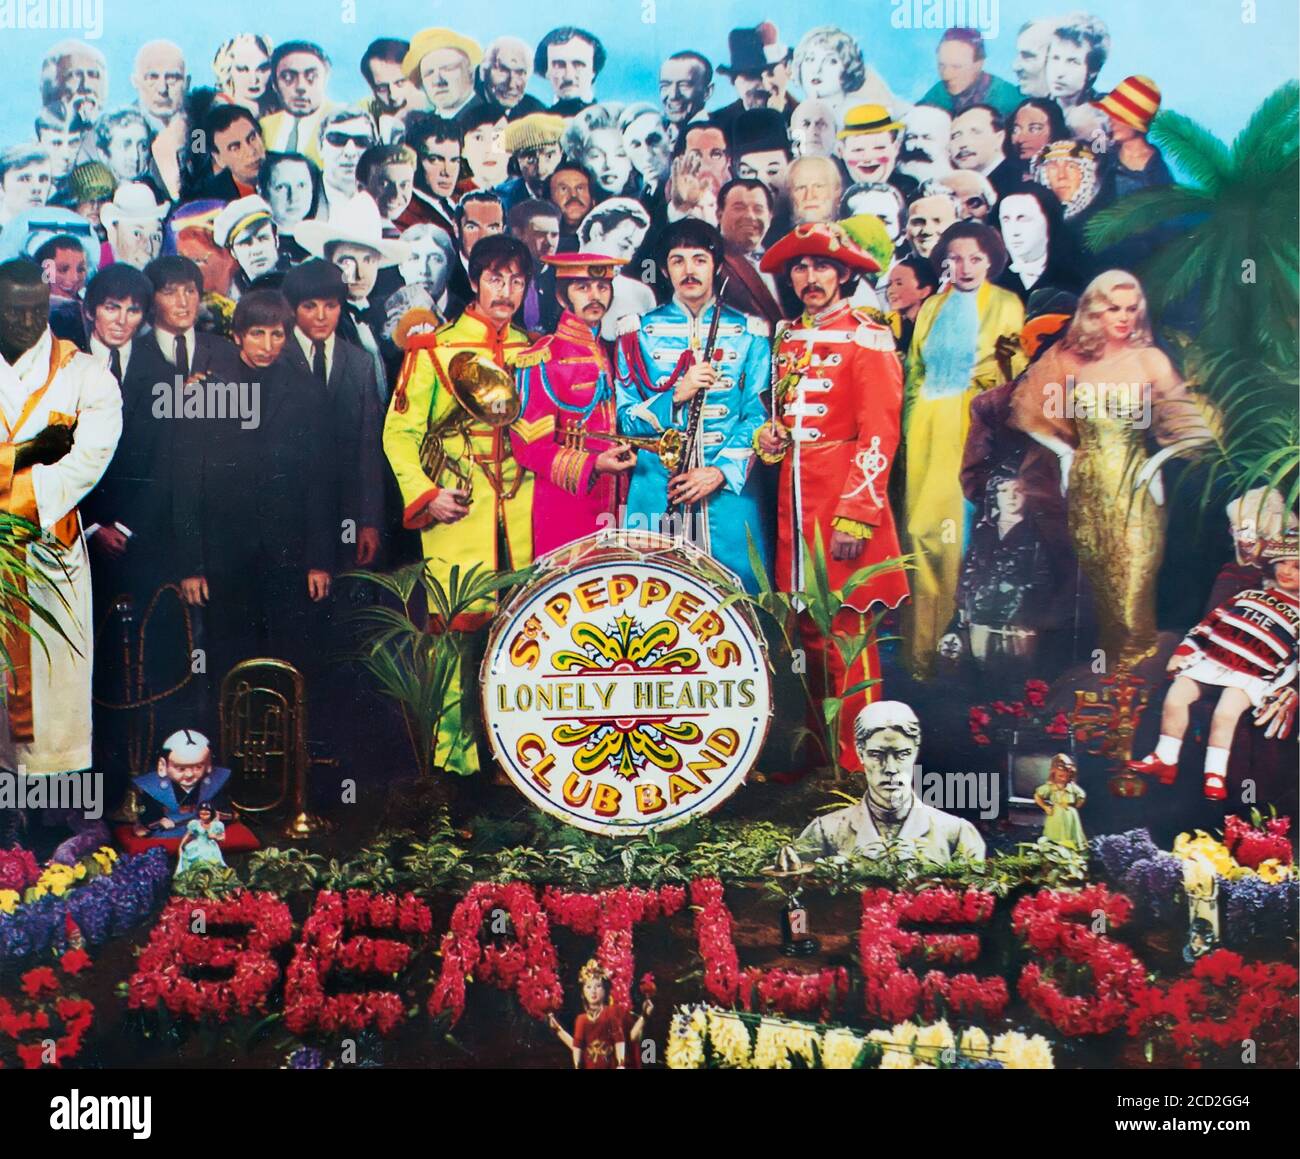 Immagine parziale della copertina dell'album dei Beatles Sgt. Pepper's Lonely Hearts Club Band Foto Stock